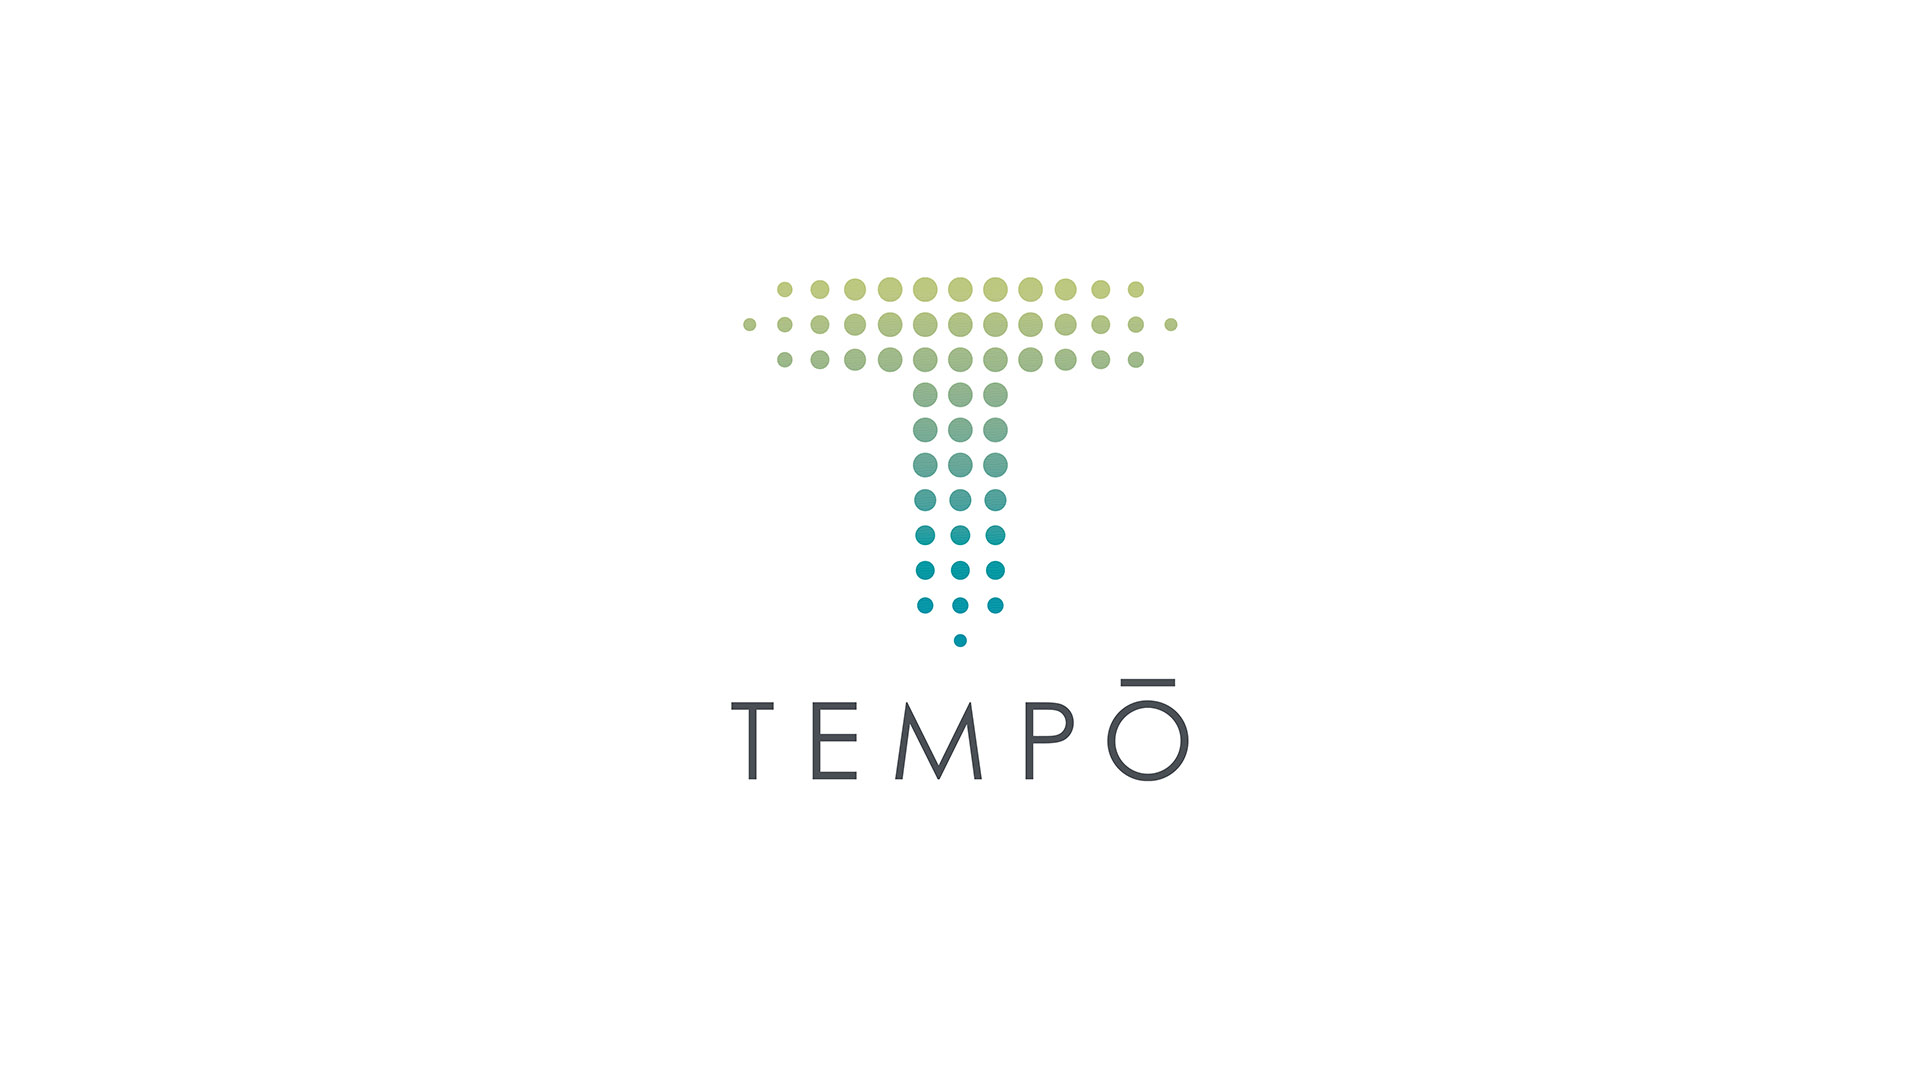 tempo apartments logo on white